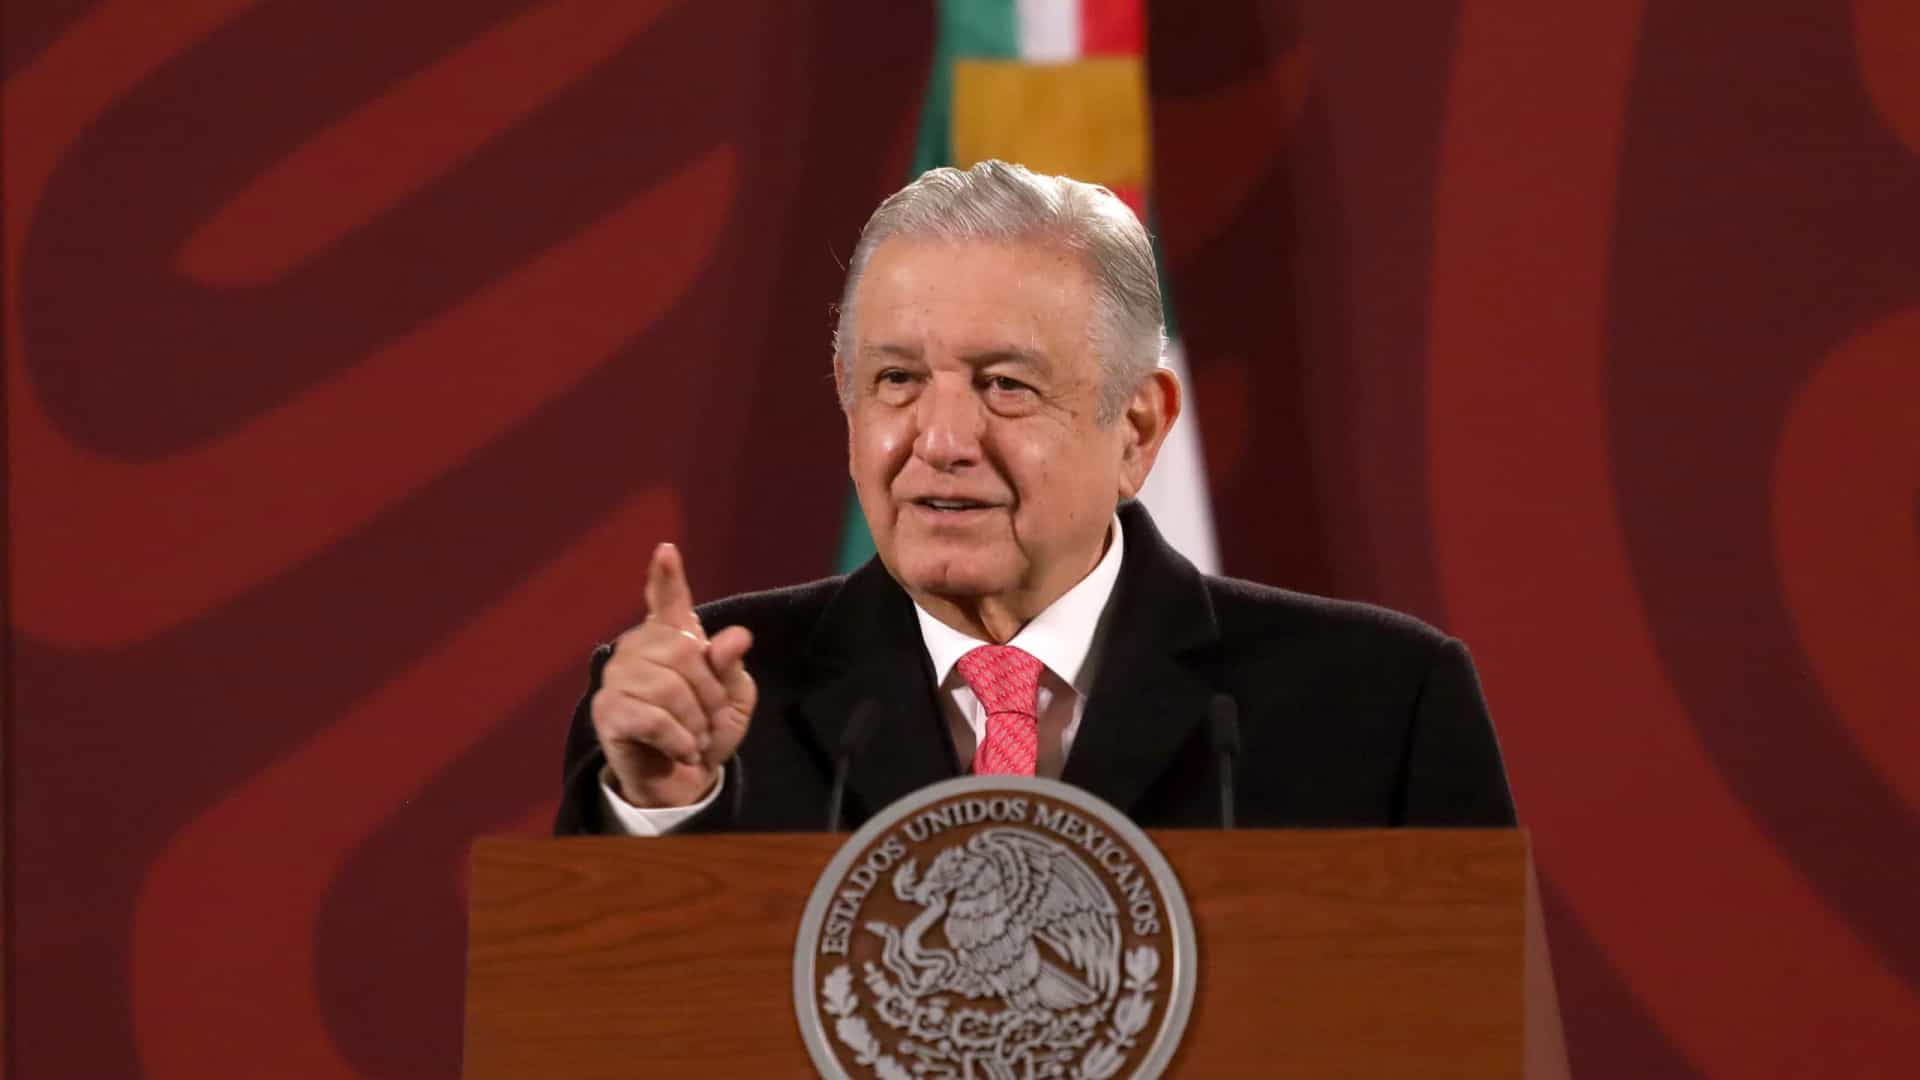 presidente do méxico defende petróleo e alerta para transição energética